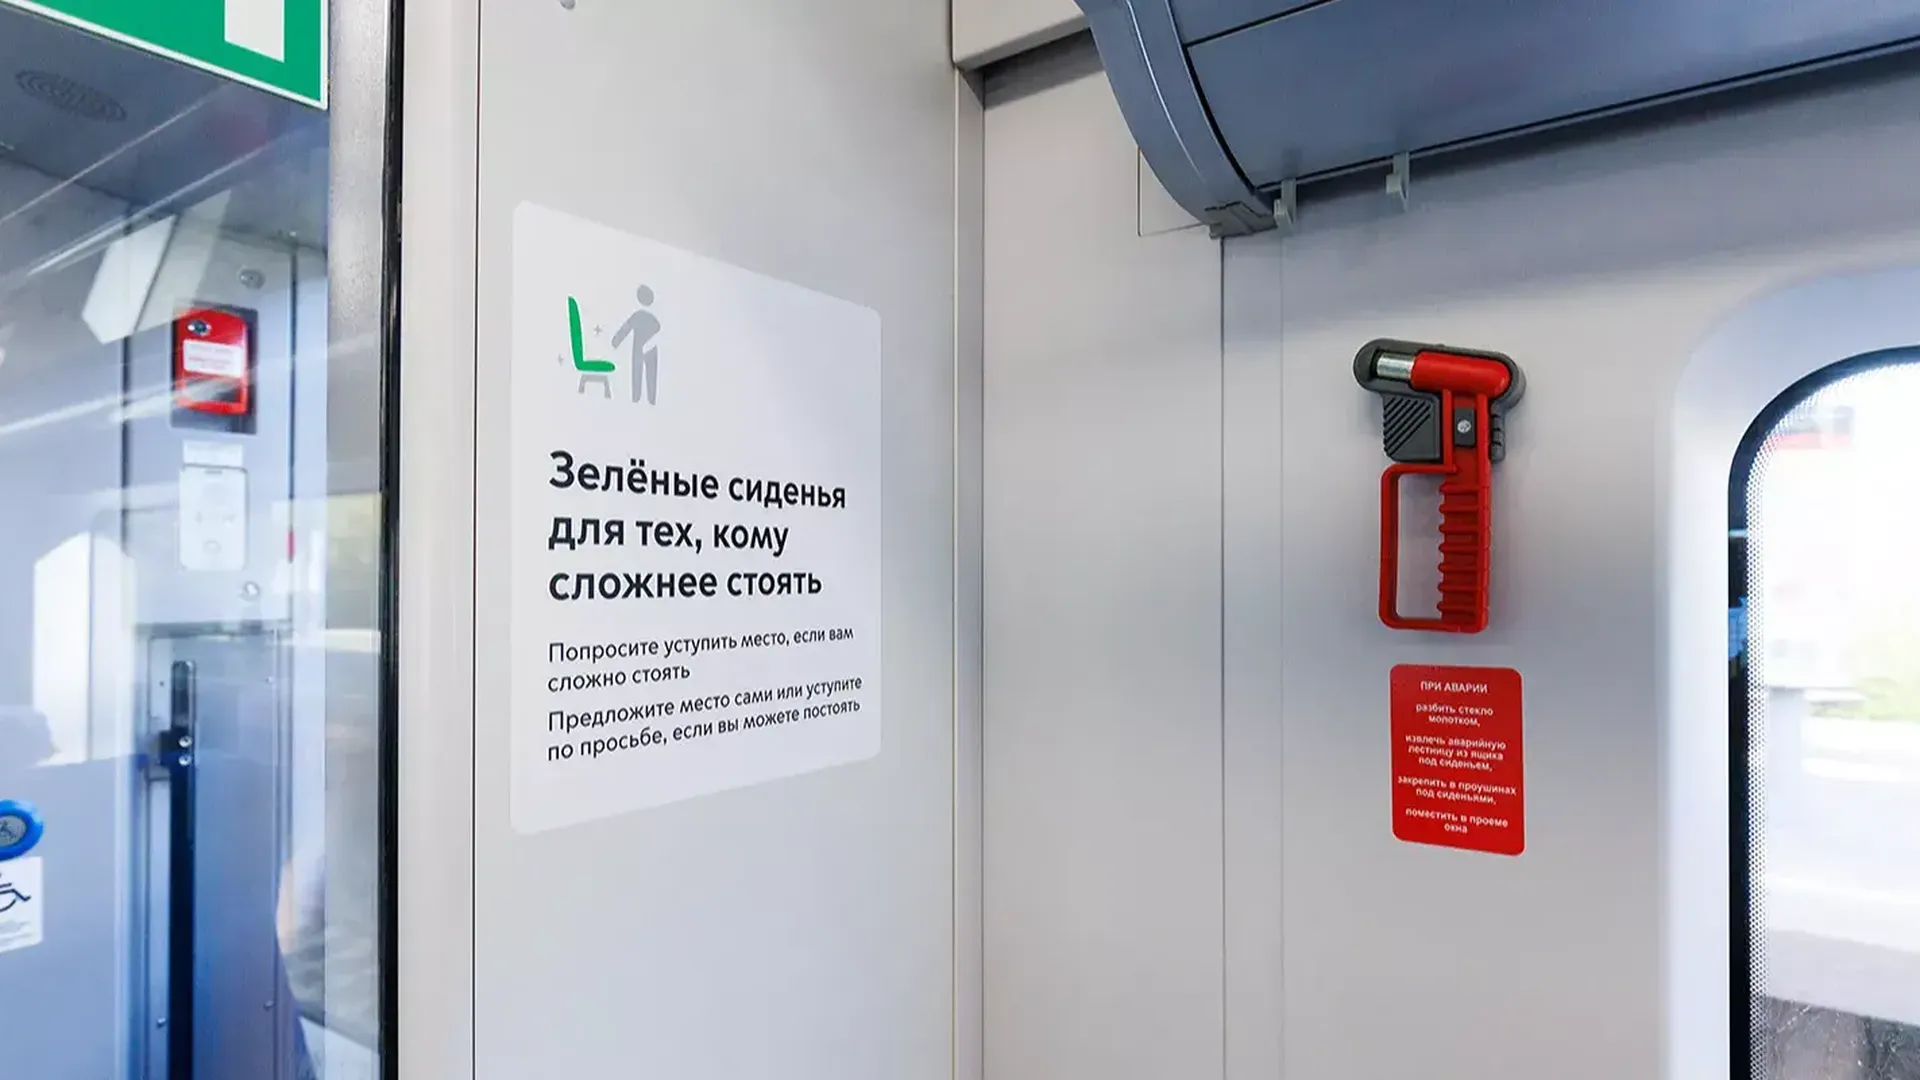 Более 10 тысяч информационных стикеров обновили в поездах МЦК